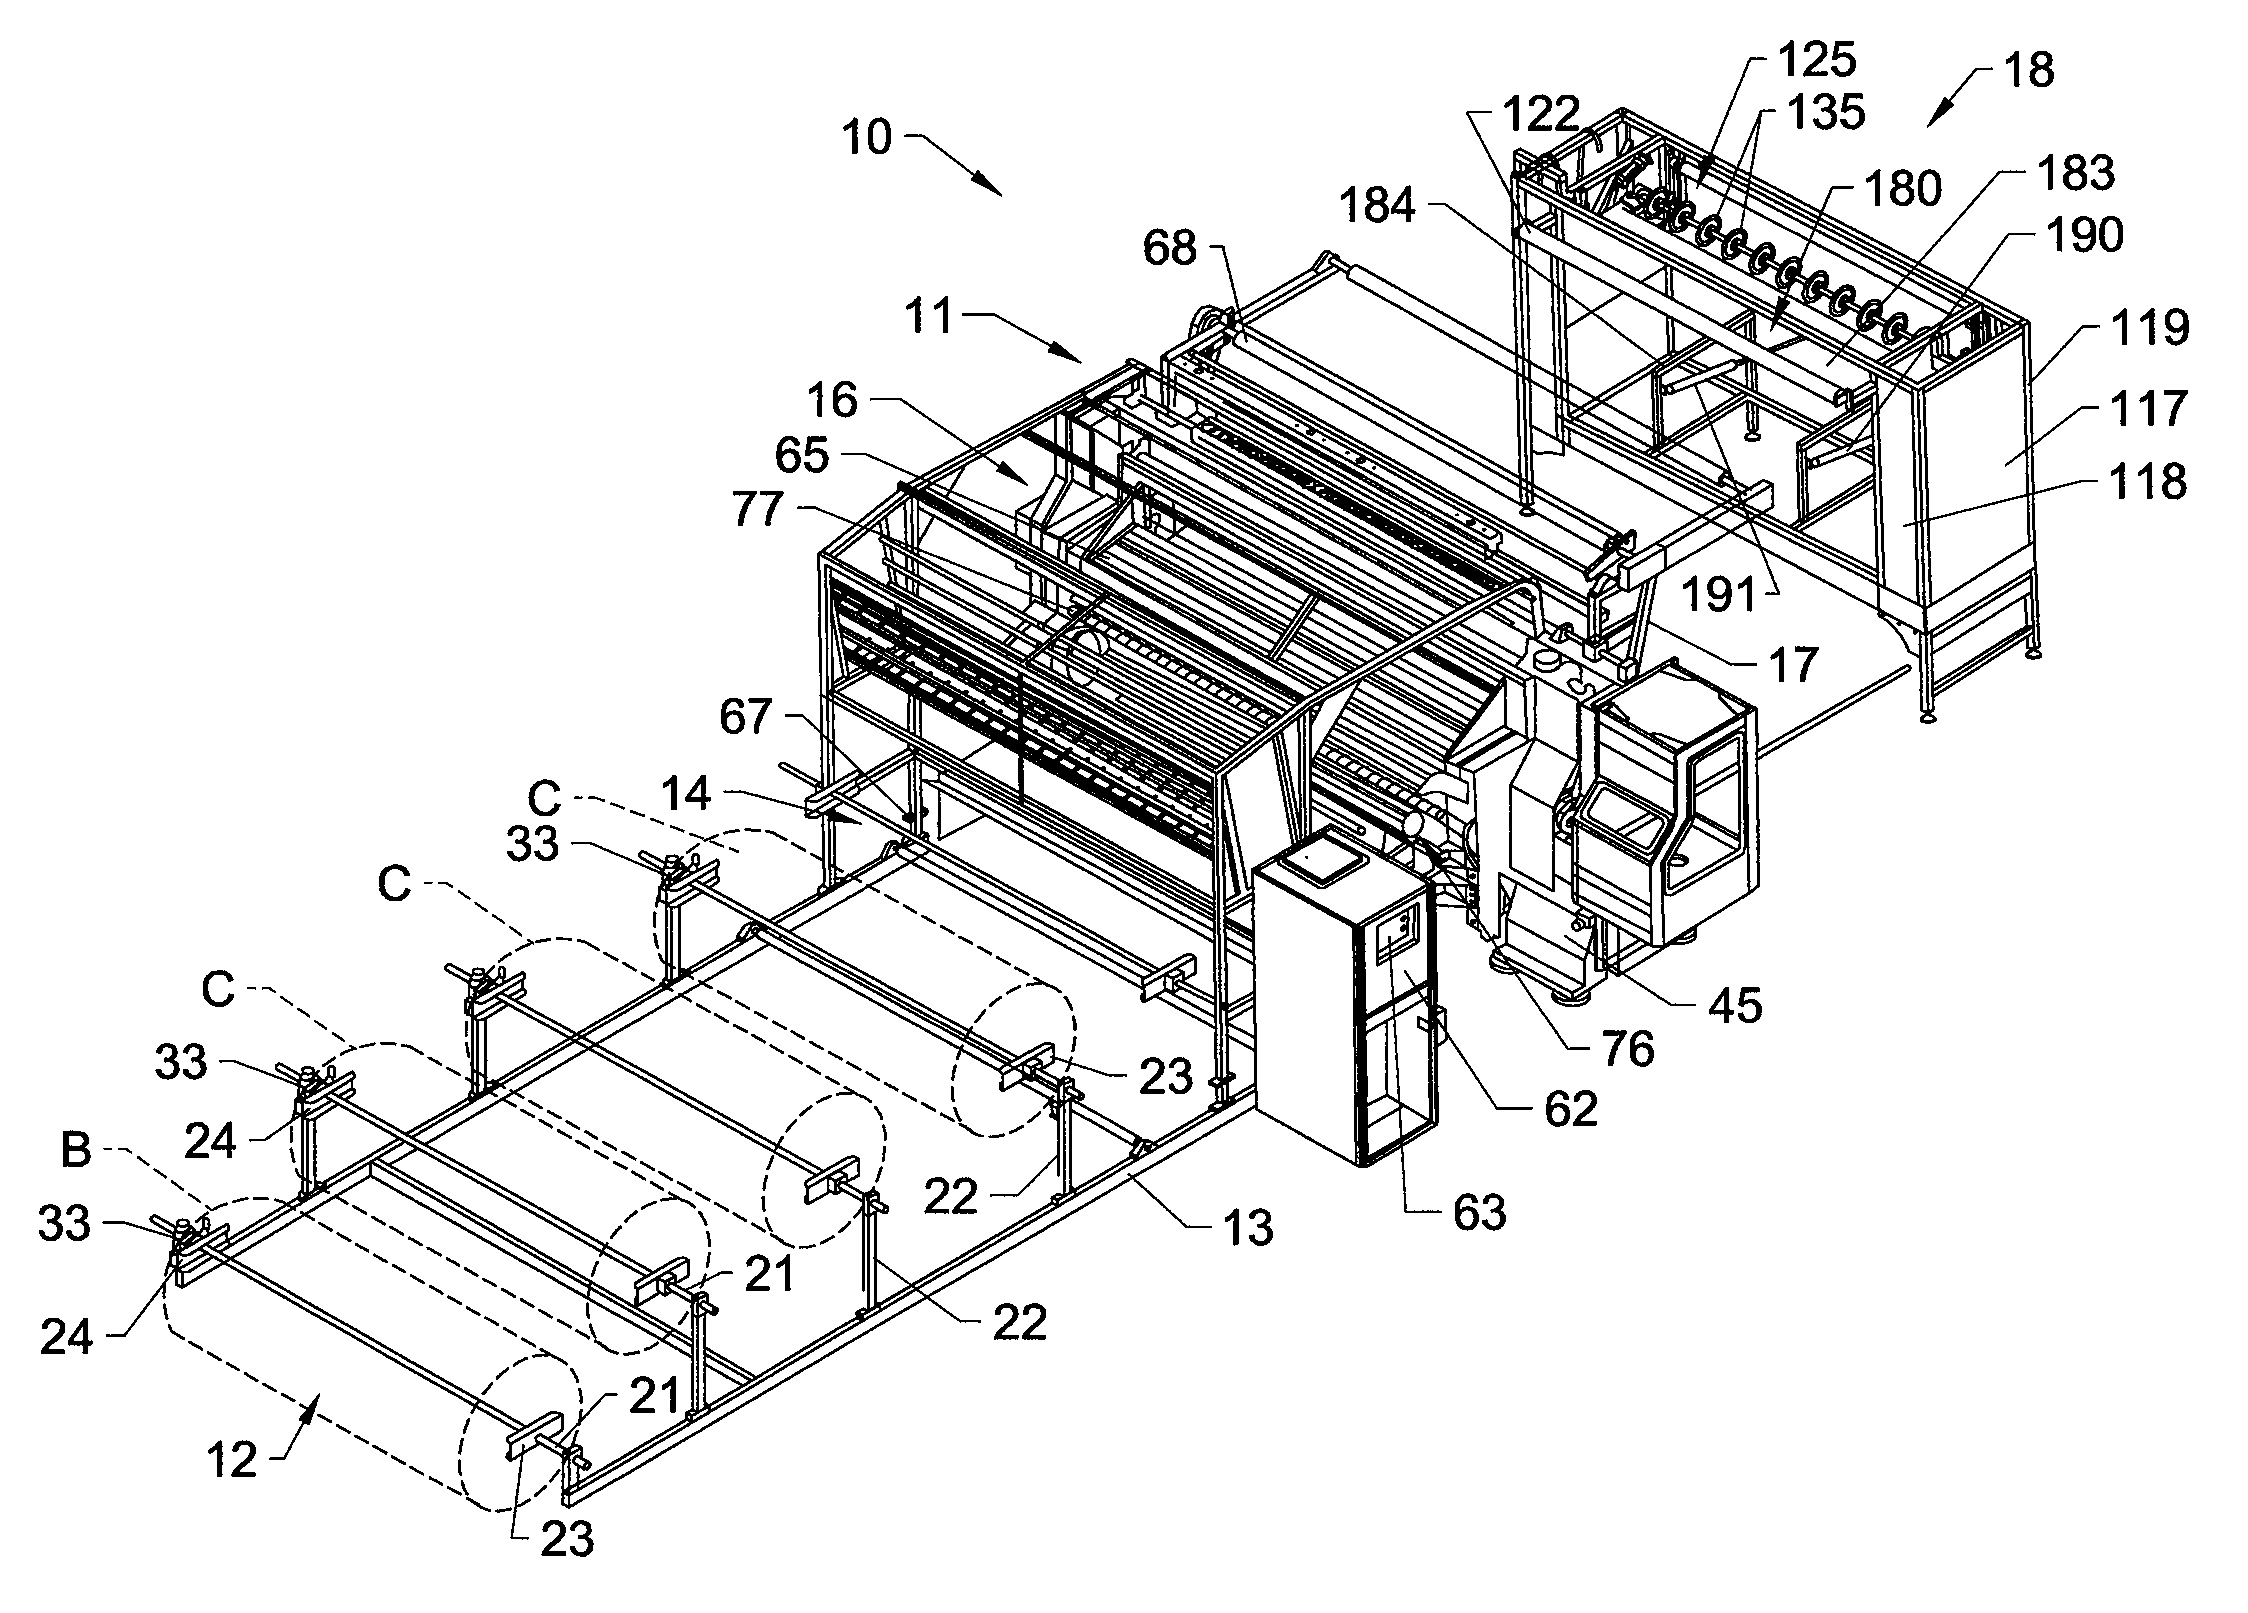 Panel quilting machine